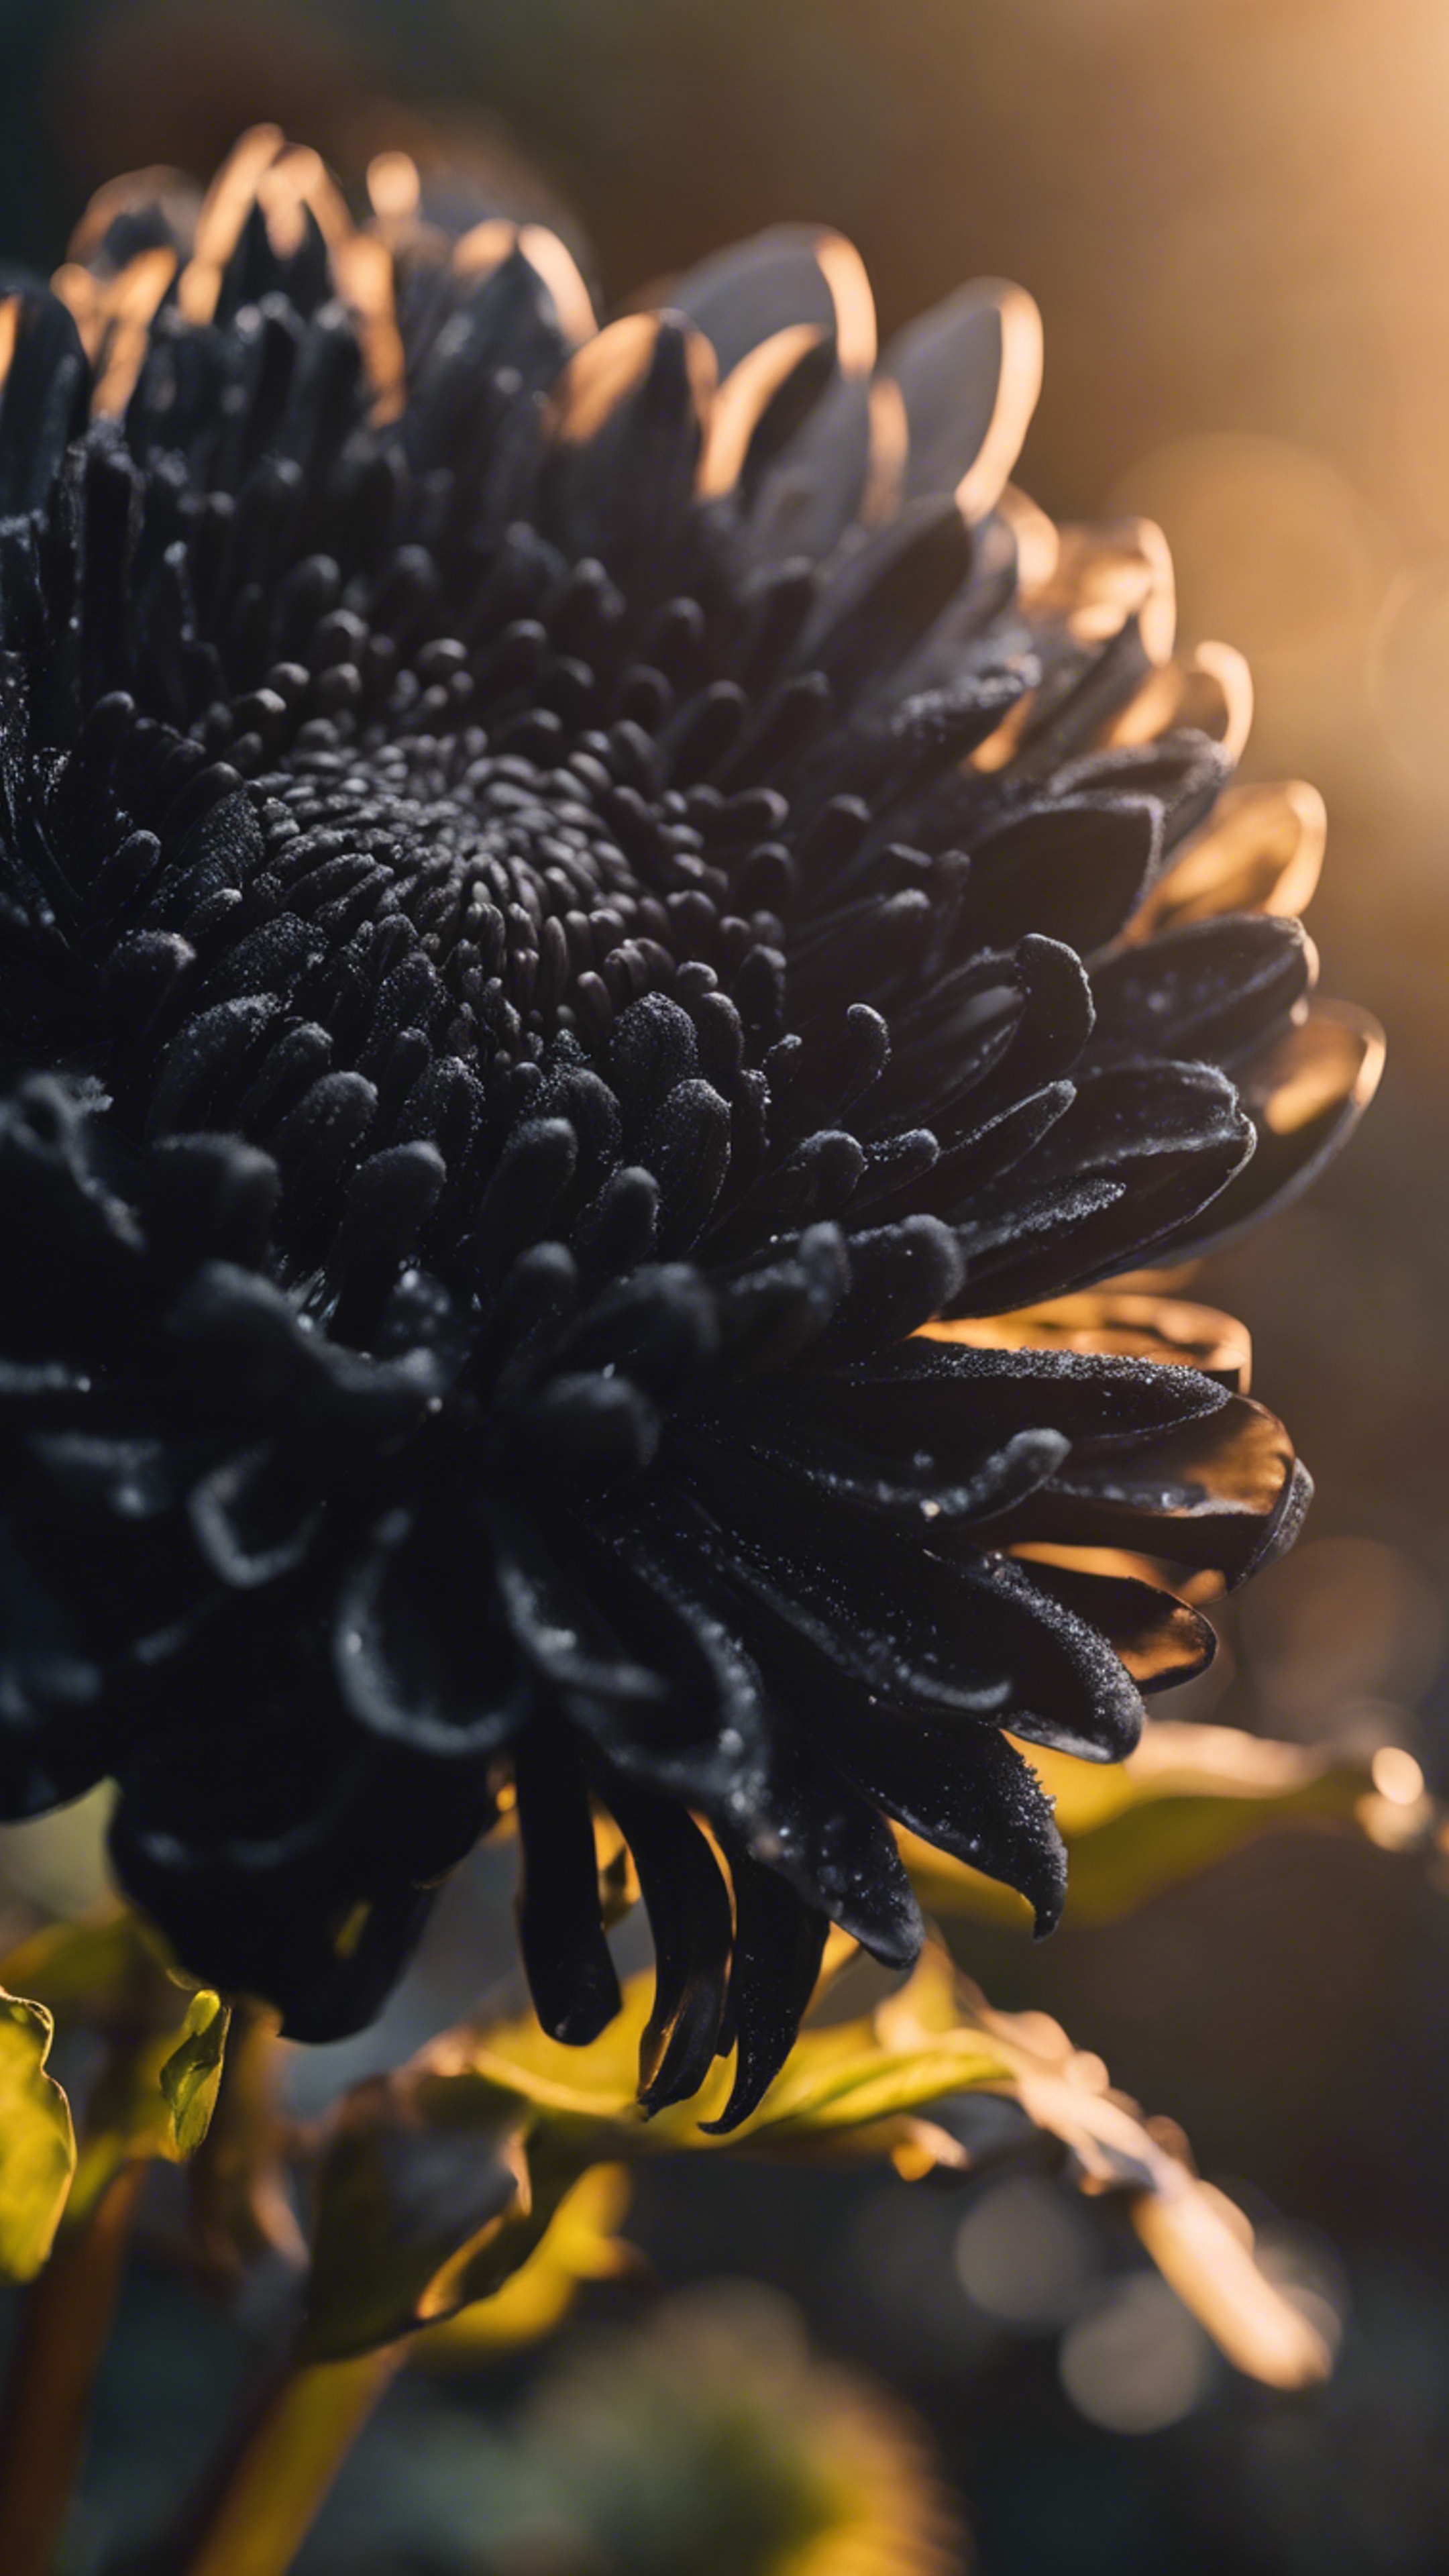 An ethereal black chrysanthemum with intricate petals against a backdrop of the setting sun. duvar kağıdı[4b40c3df292a42548d77]